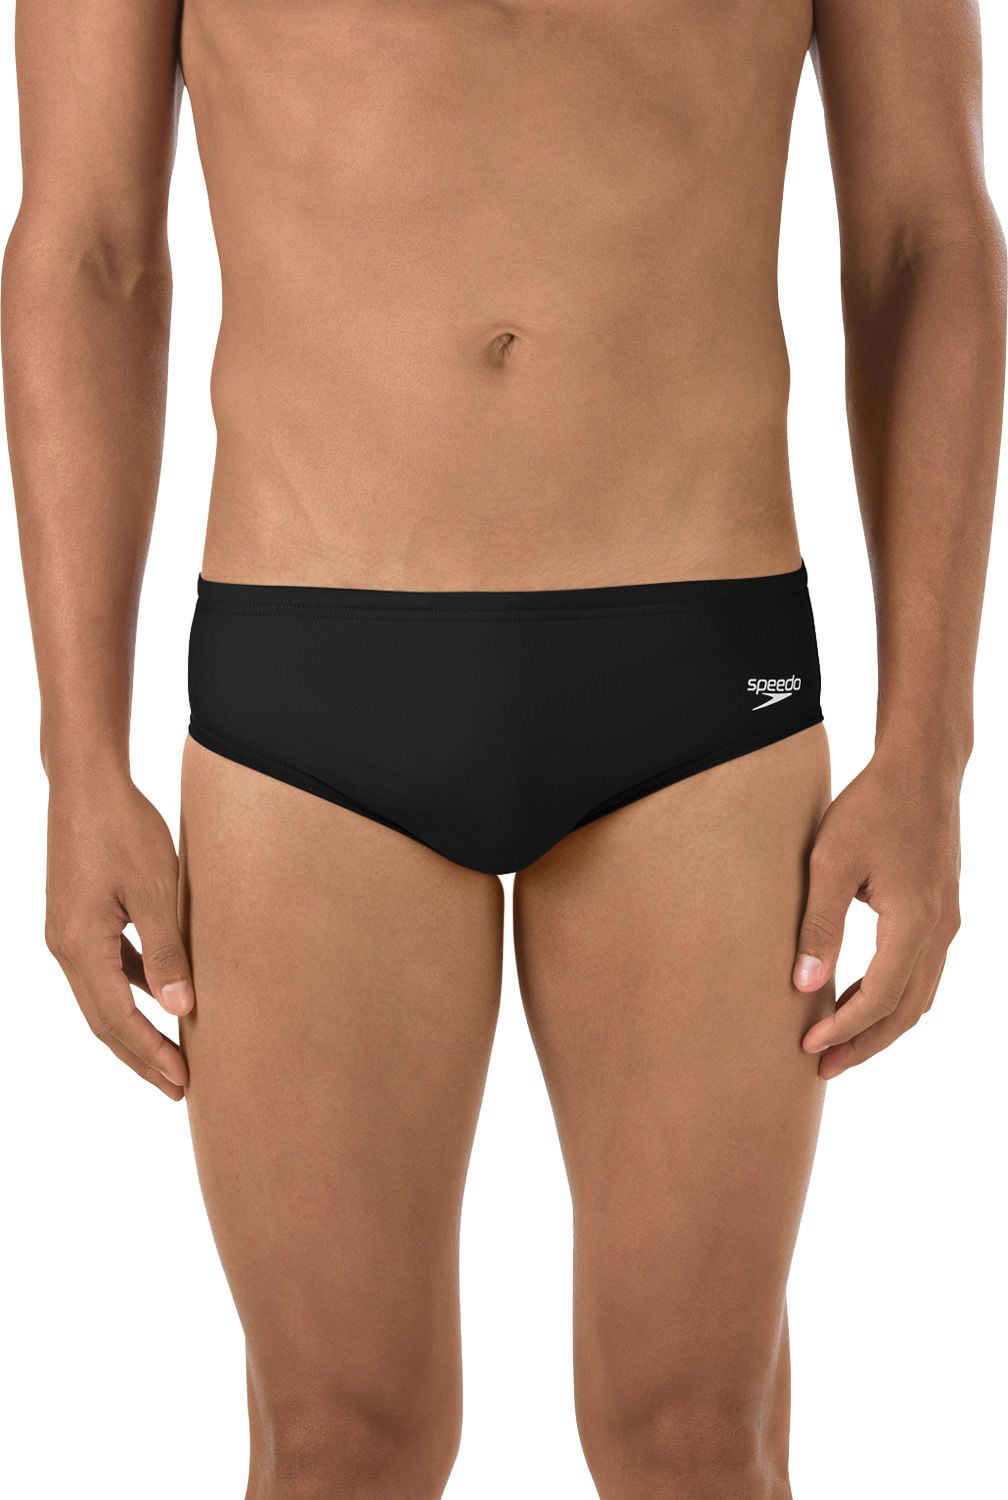 Speedo Men's Male Brief-Solid Lycra Underwear